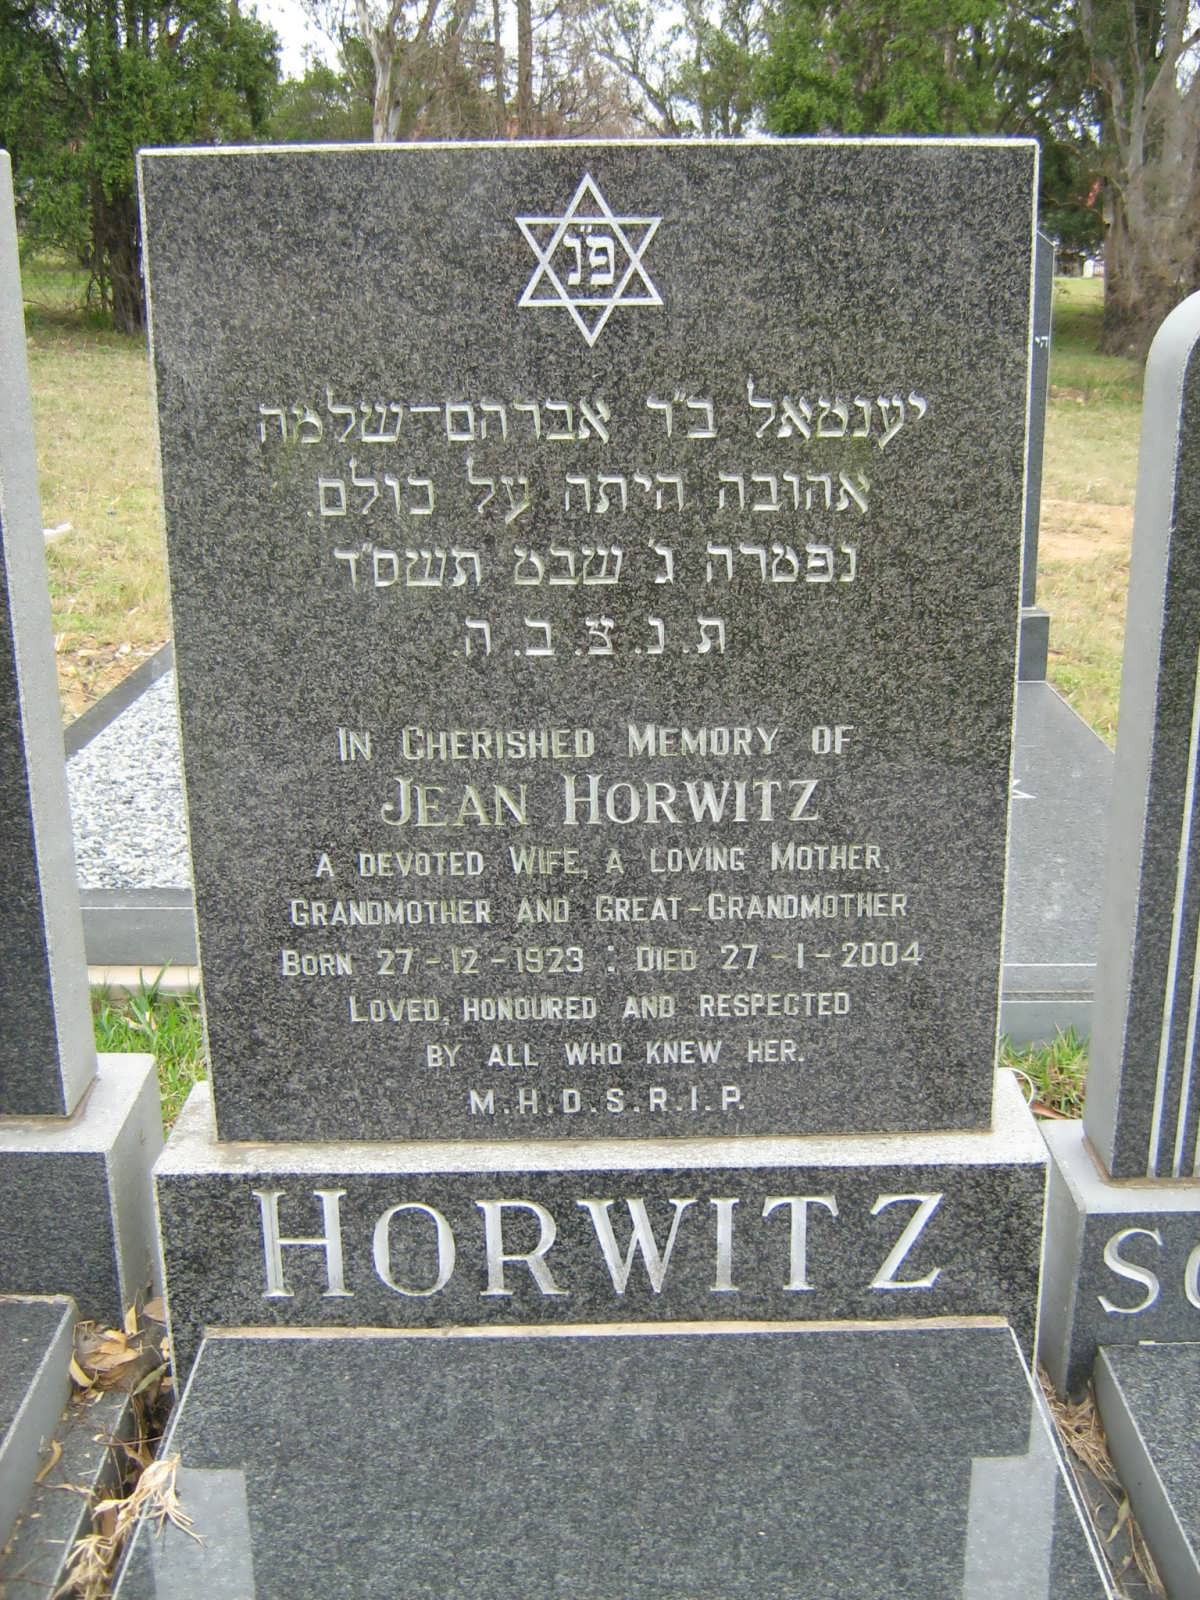 HORWITZ Jean 1923-2004